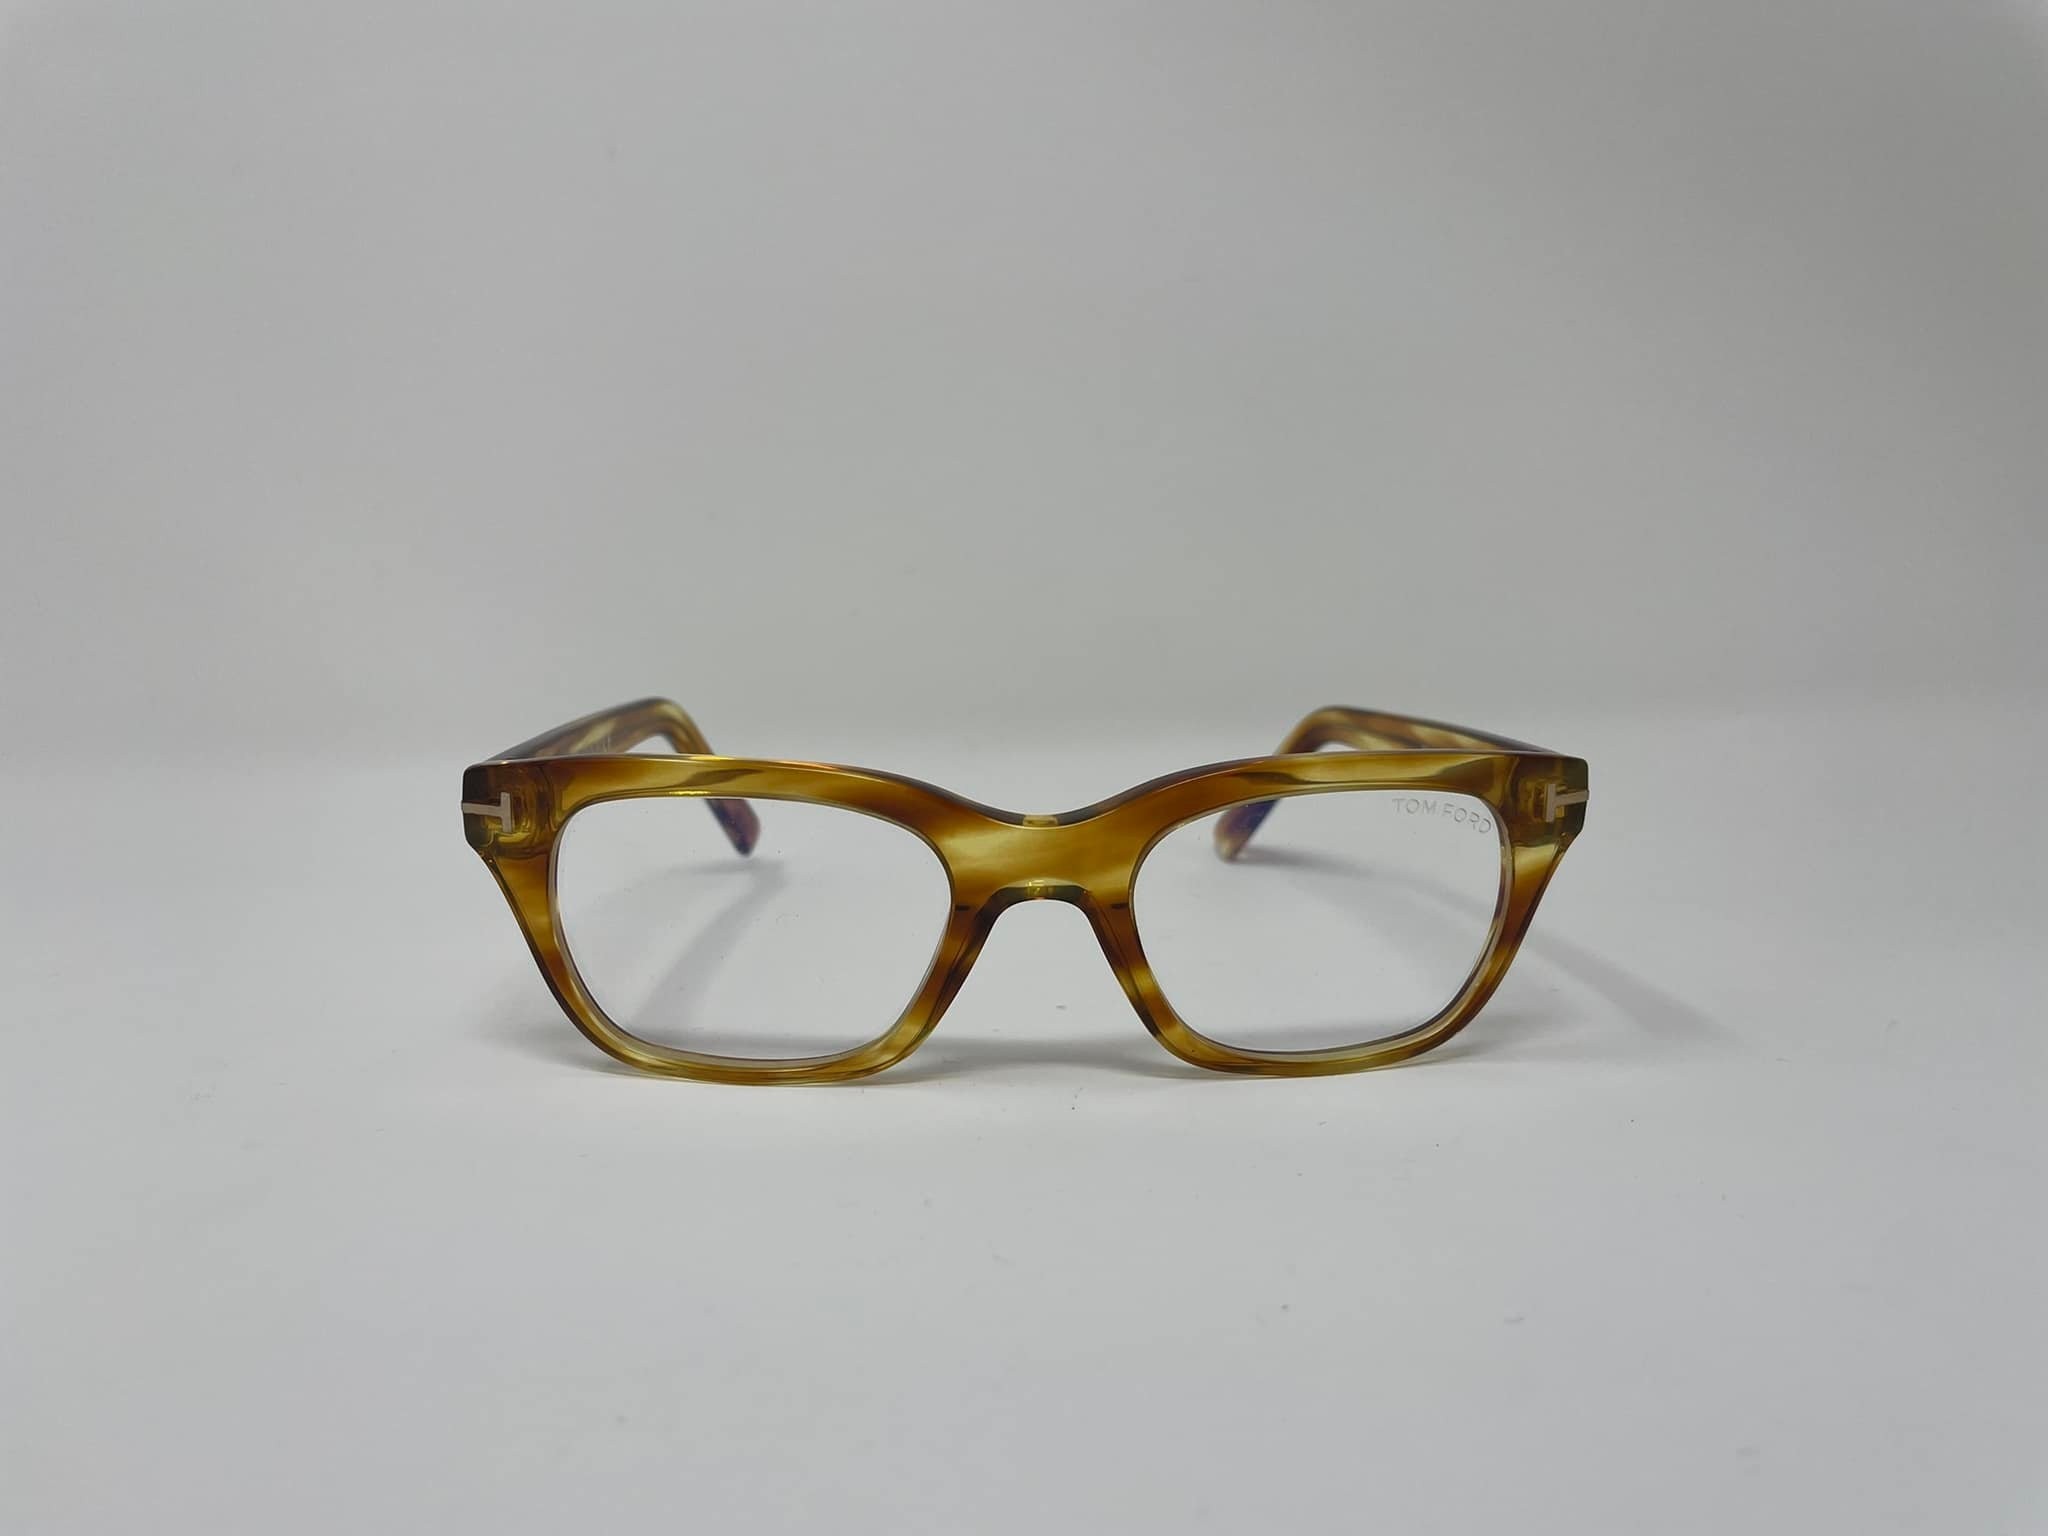 Tom Ford TF 5536 men's eyeglasses